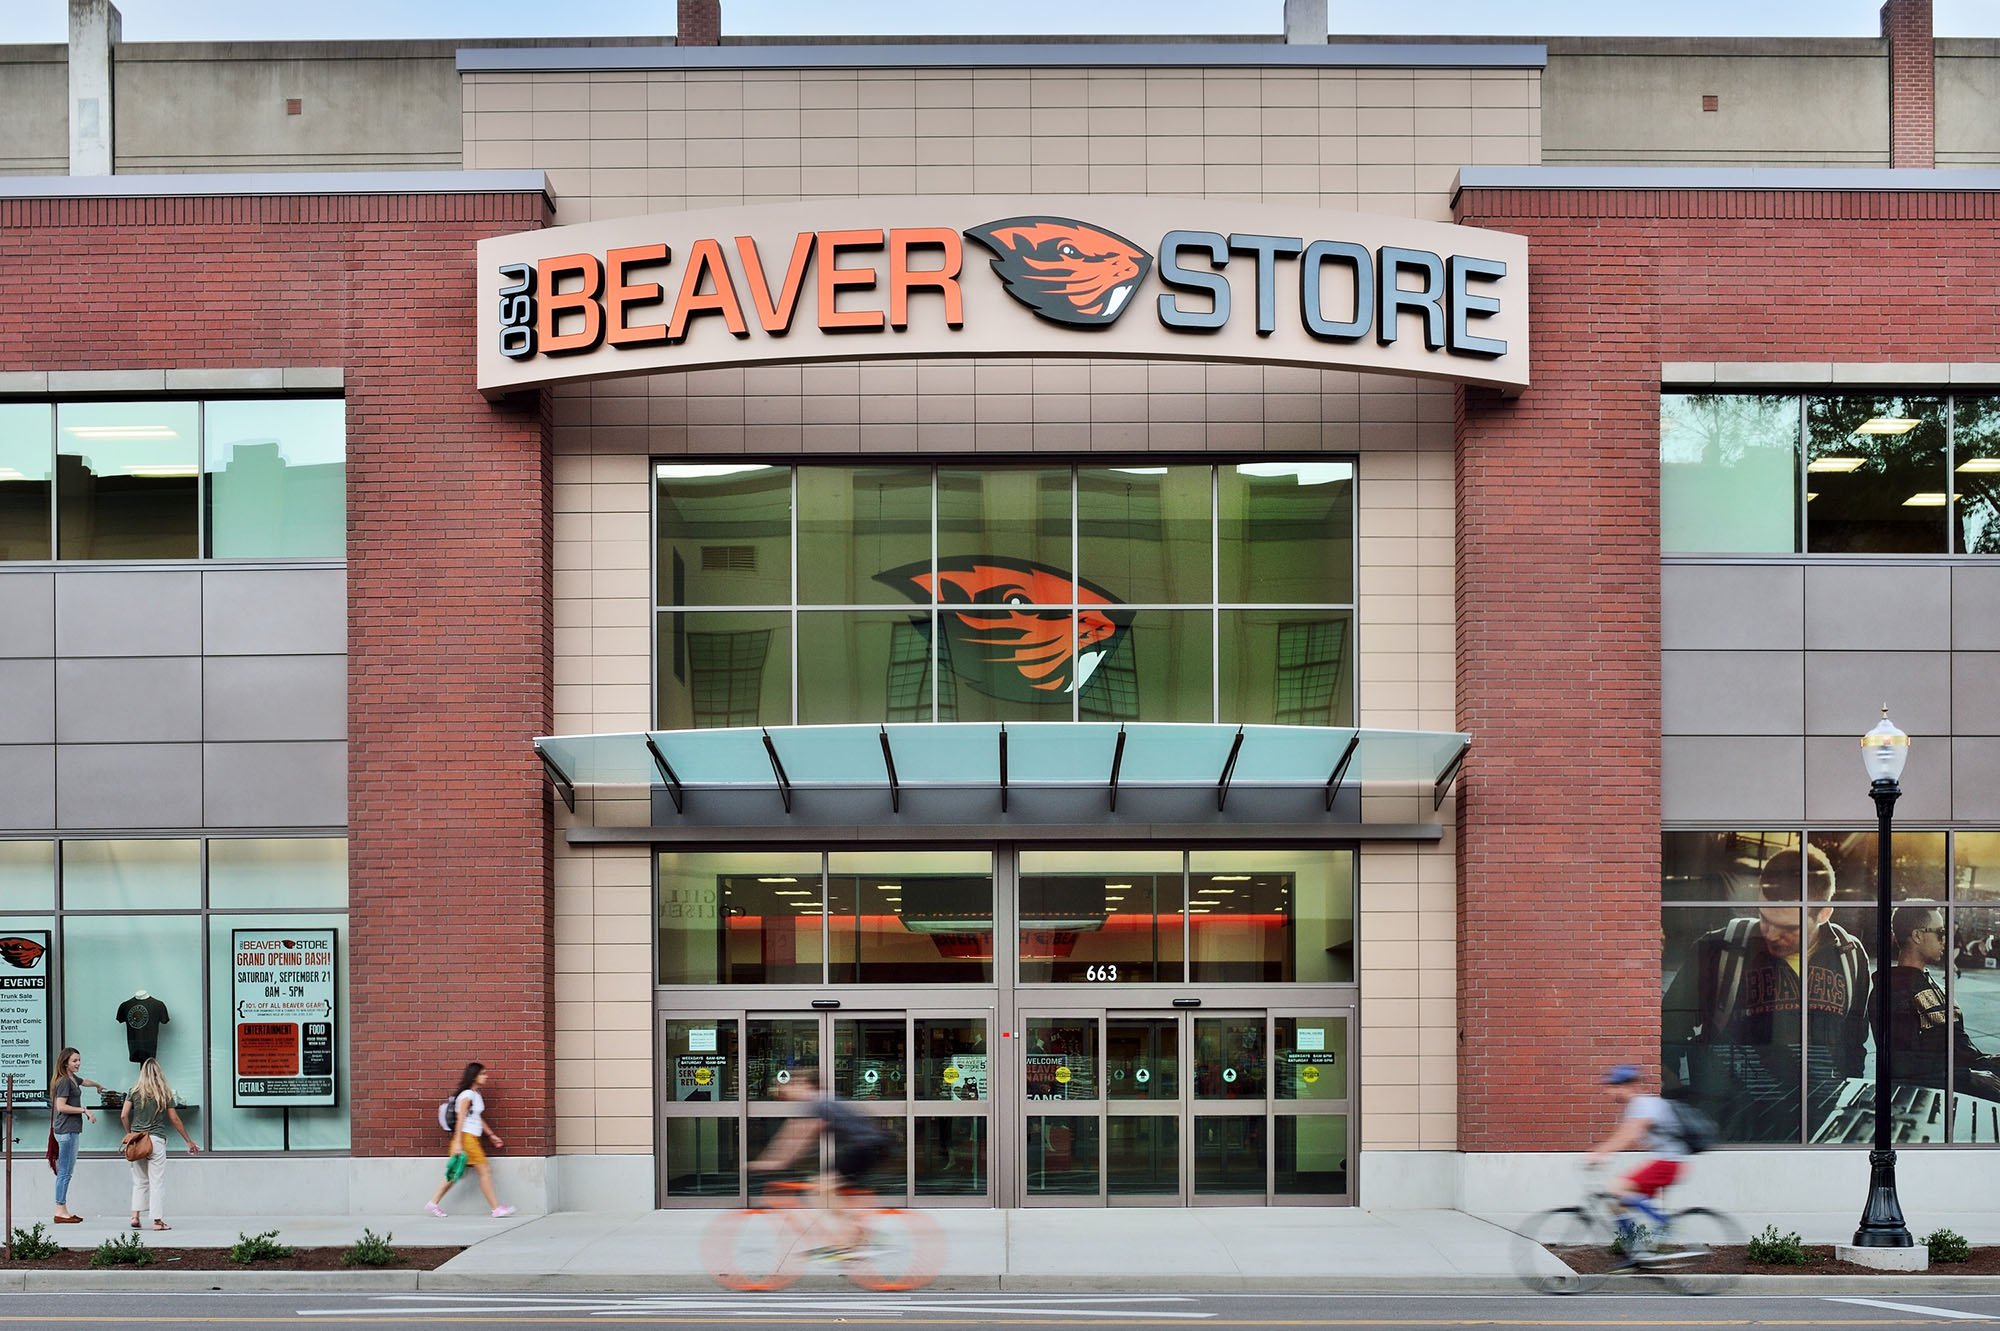 OSU Beaver Store exterior